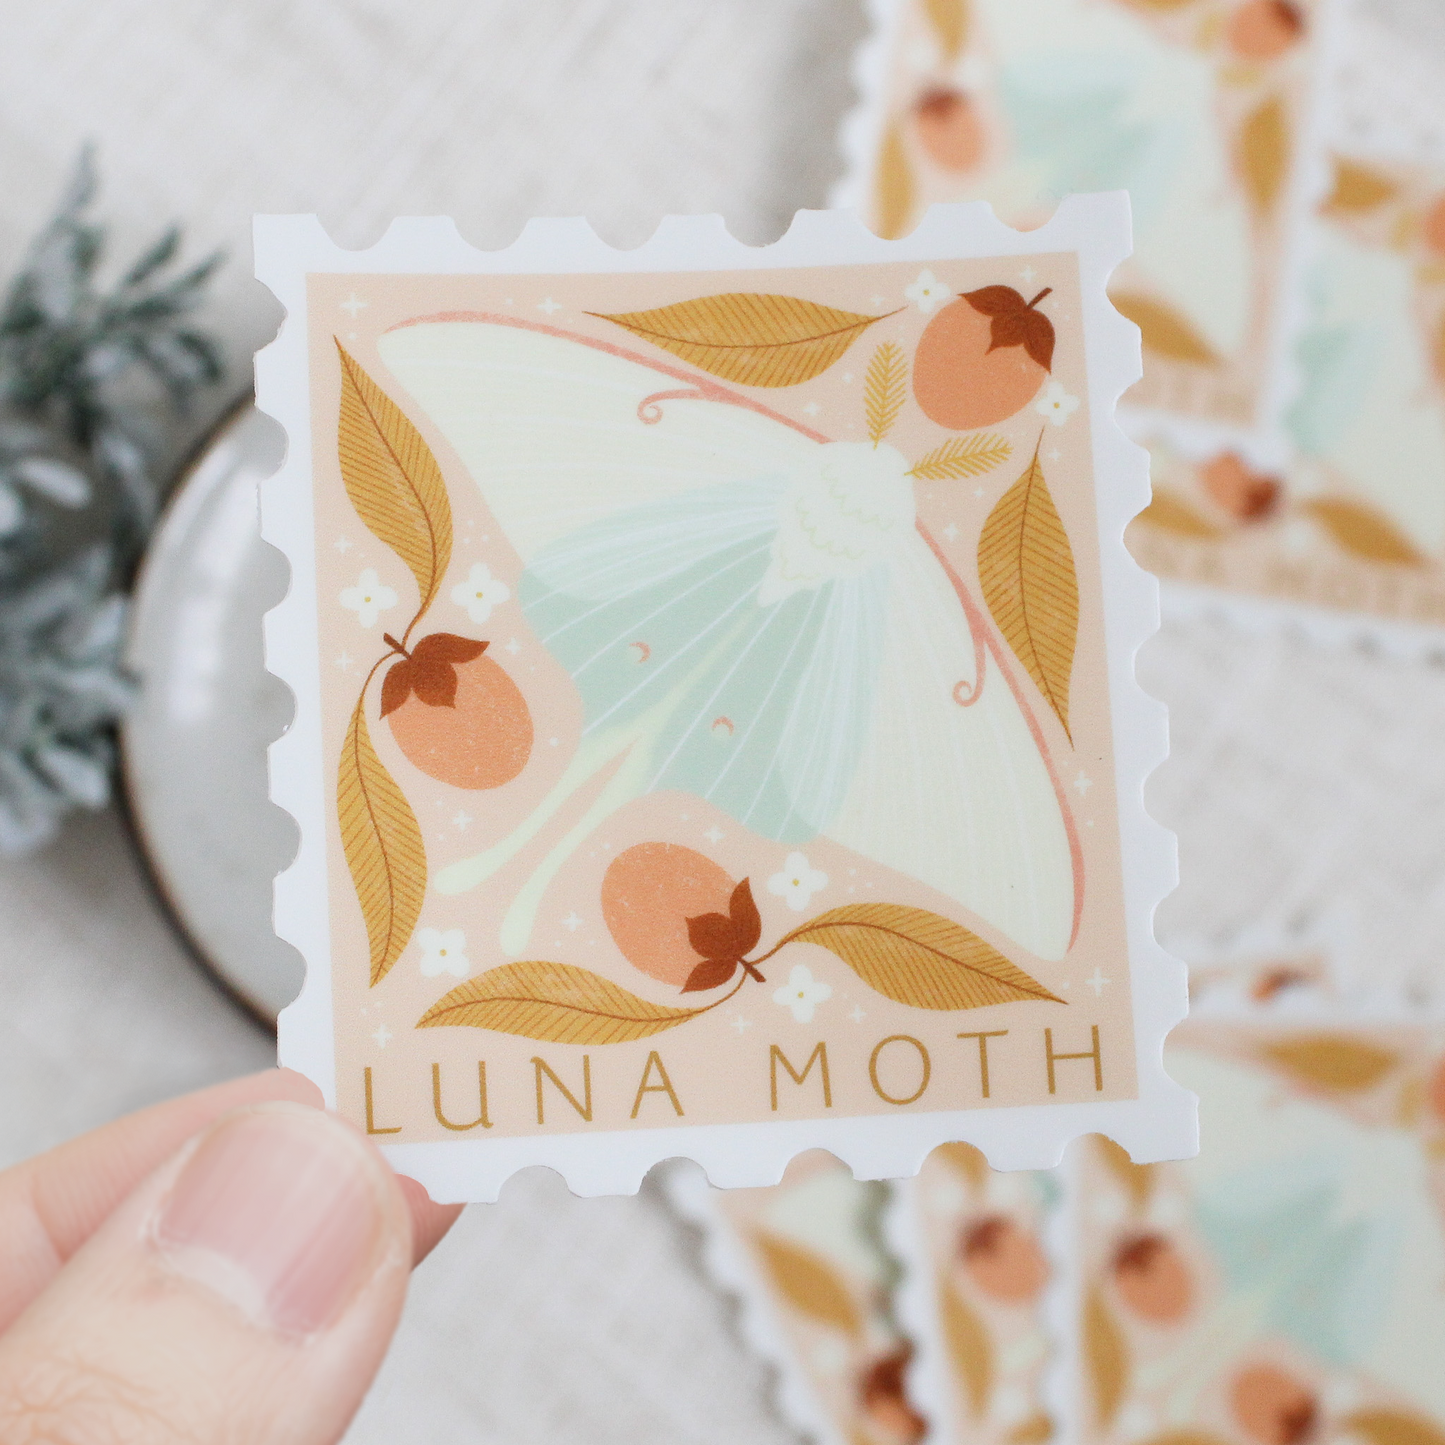 Luna moth, stamp shaped vinyl sticker